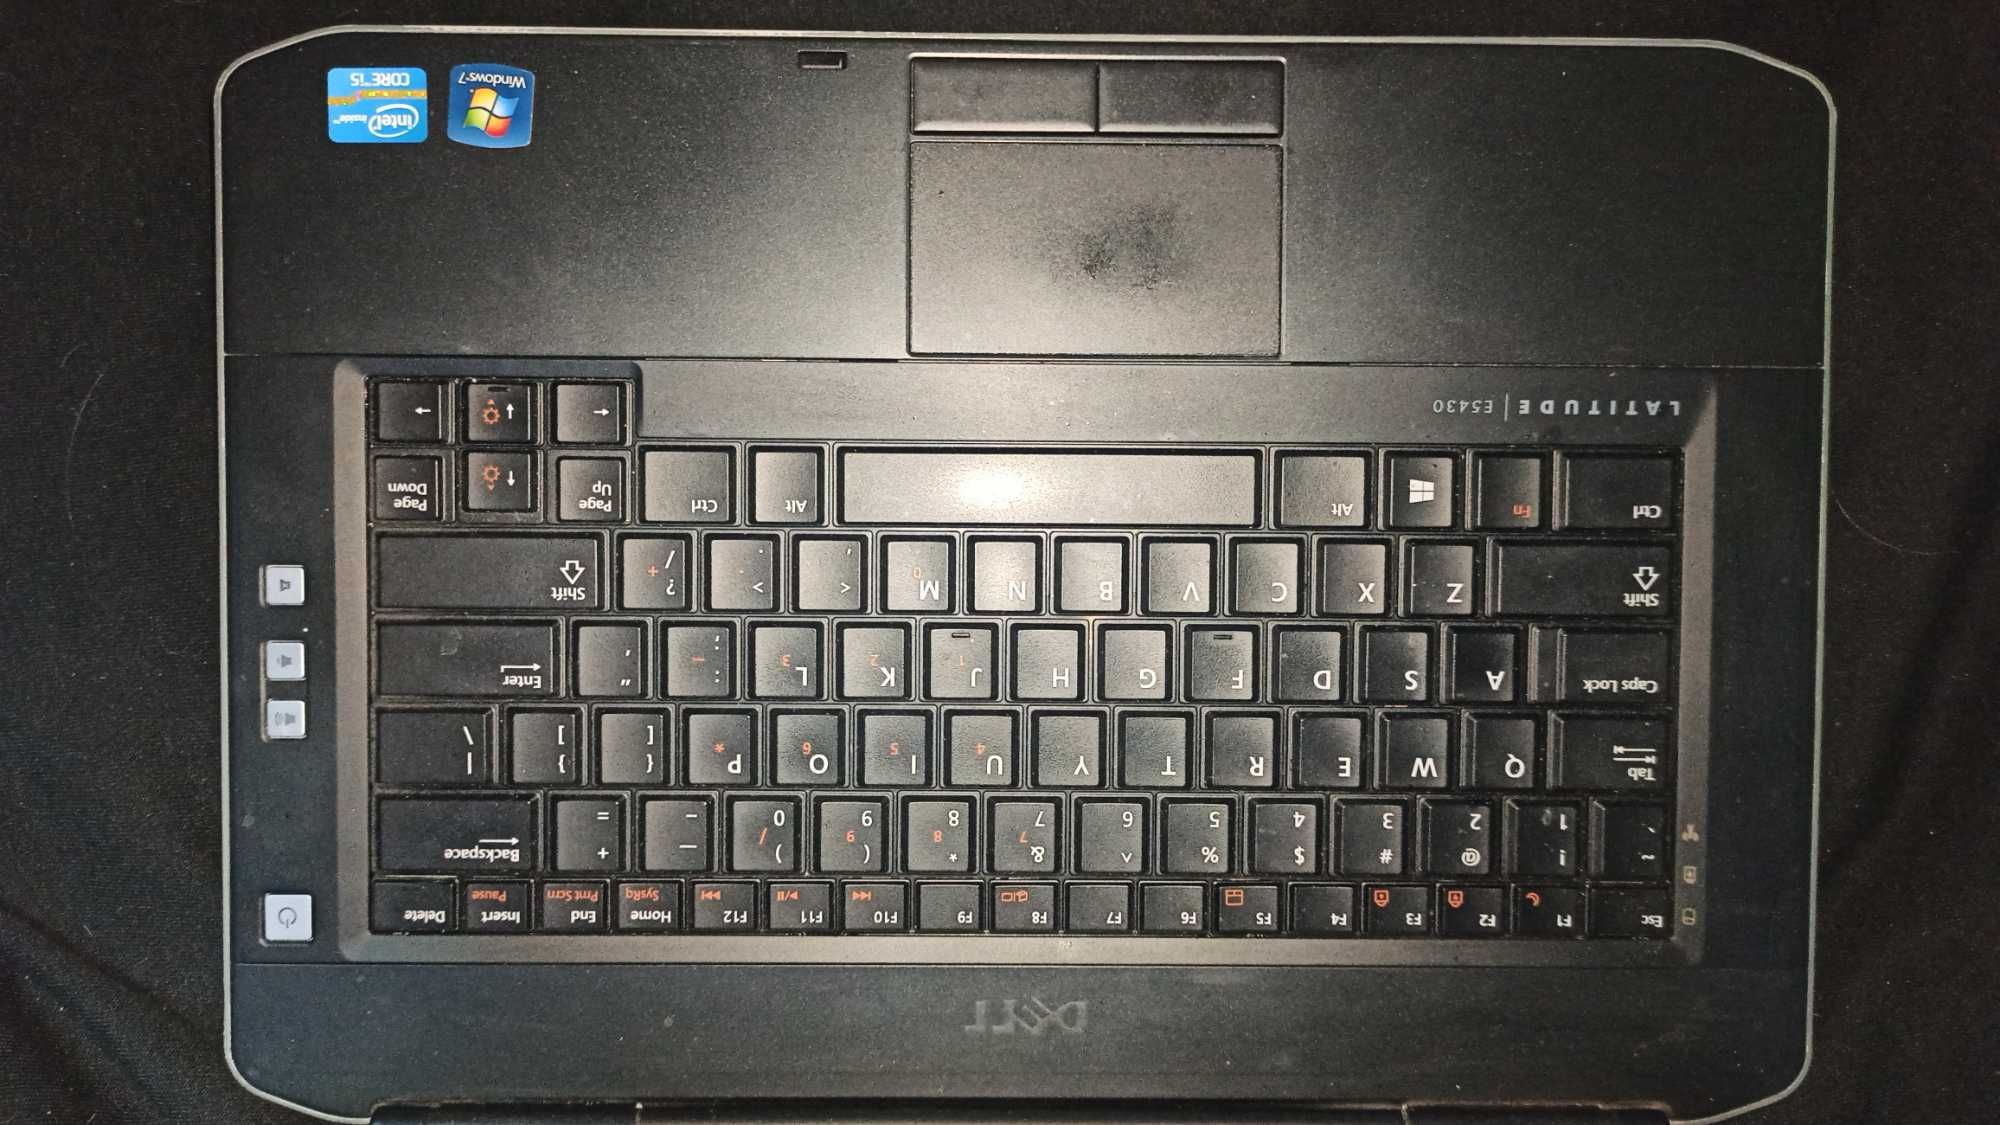 Ноутбук Dell E5430